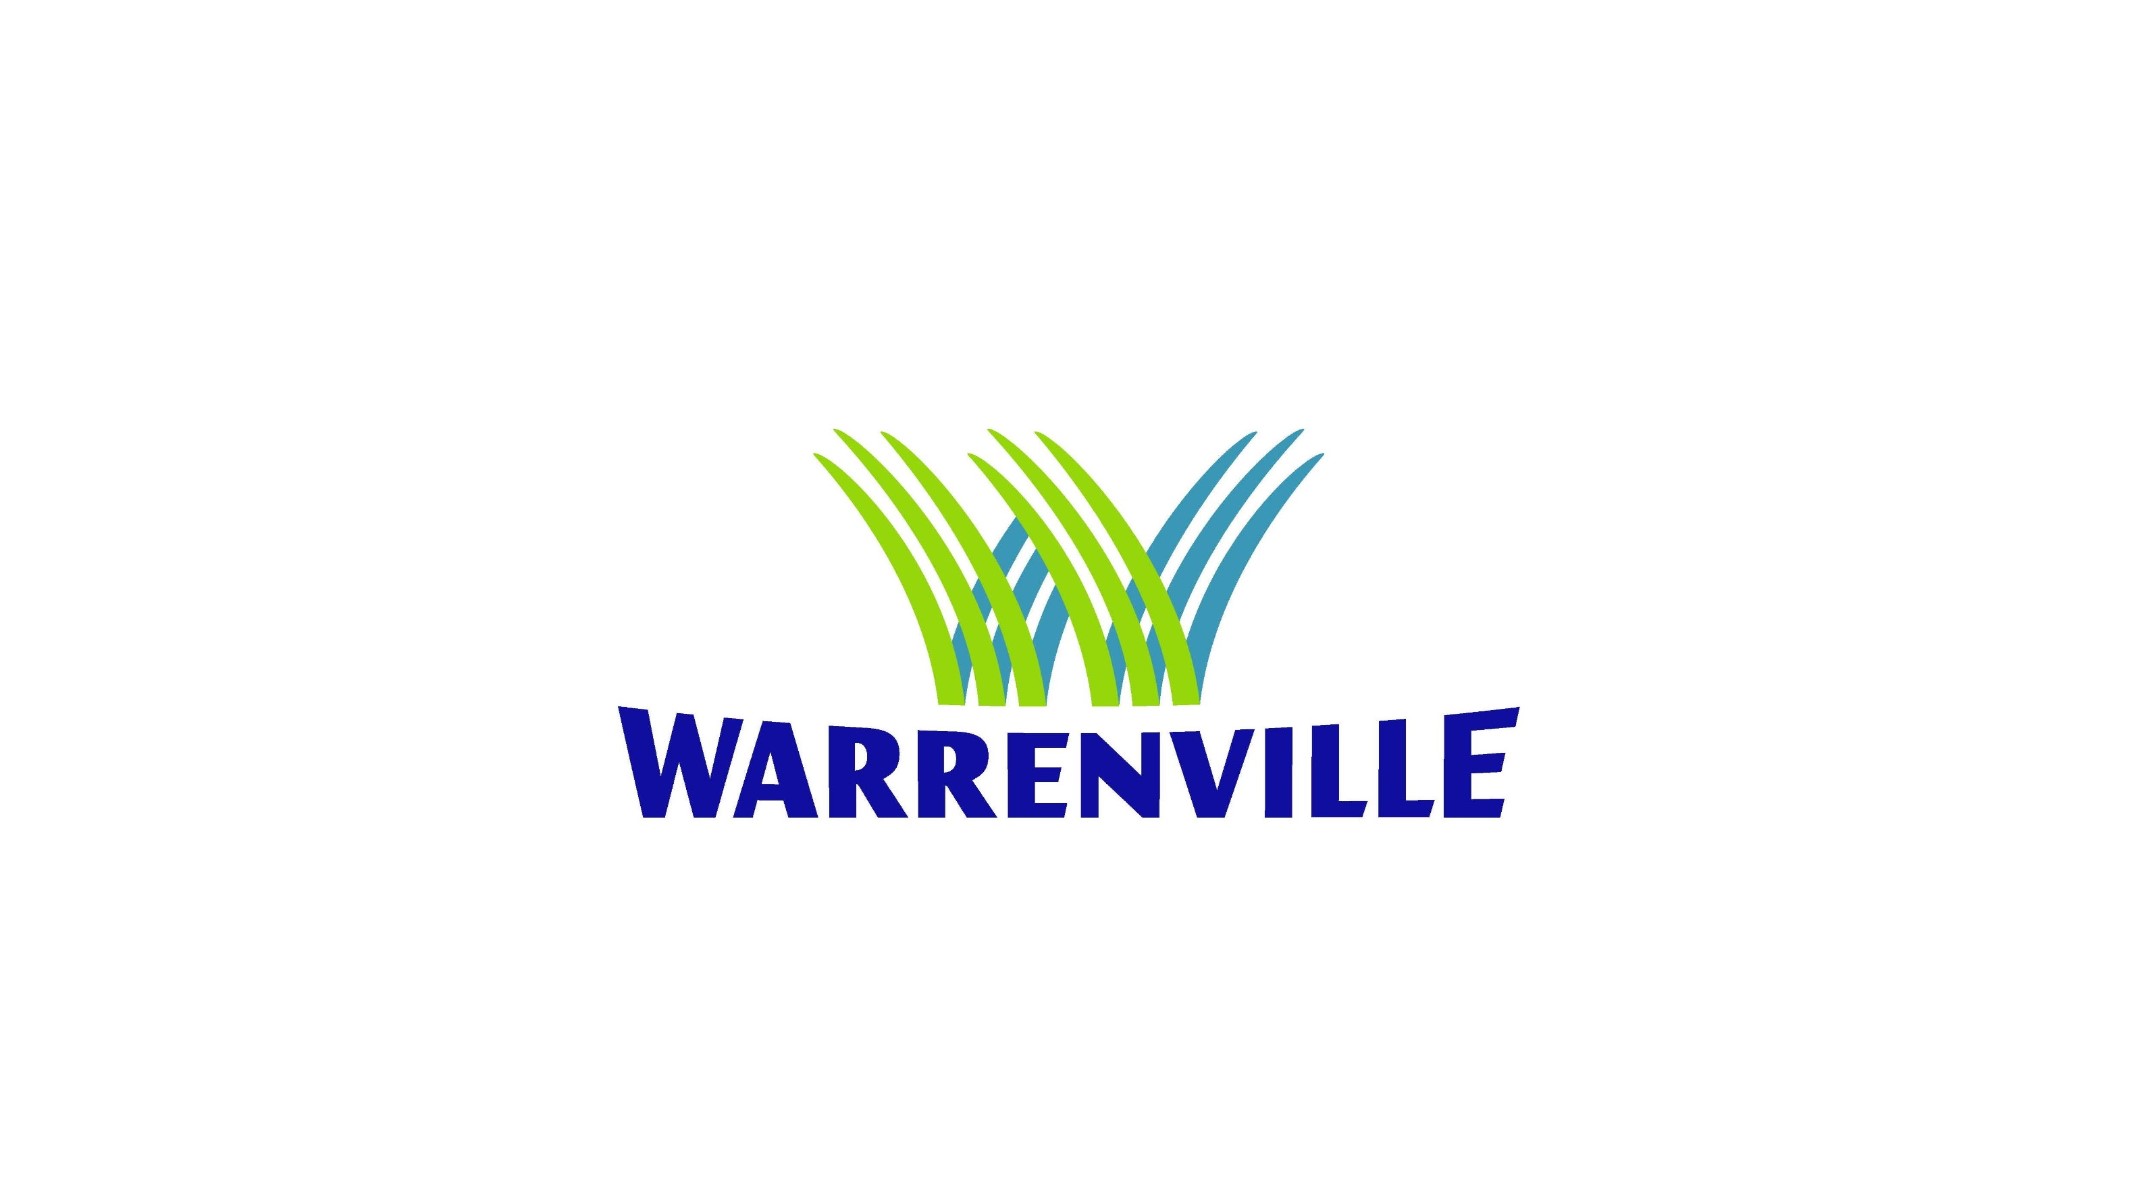 IT support in warrenville il logo